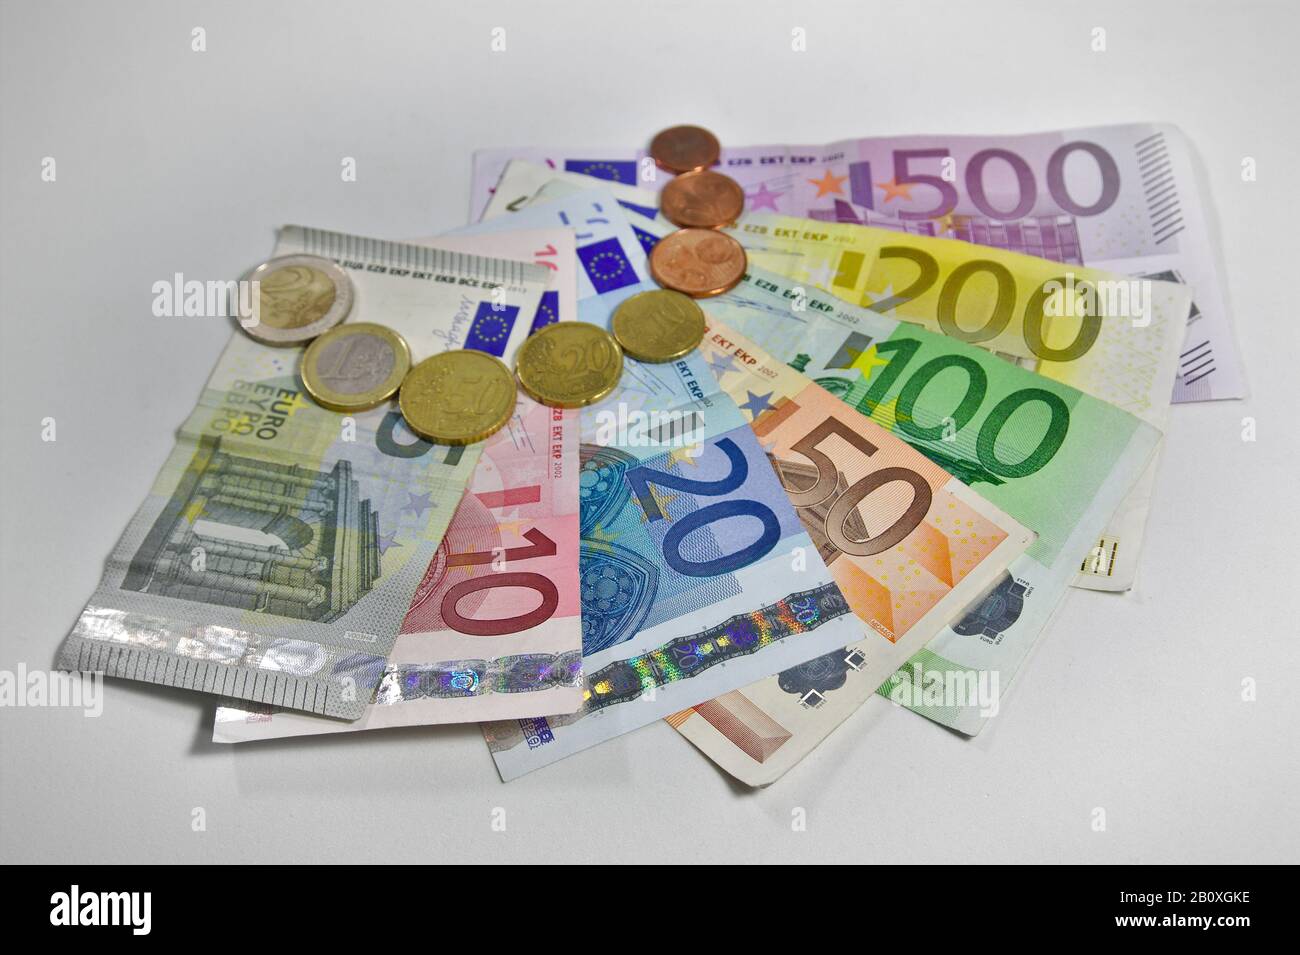 Blick von oben auf einige Euro-Münzen und -Rechnungen von 5 bis 500 Euro, die auf einem Tisch liegen Stockfoto